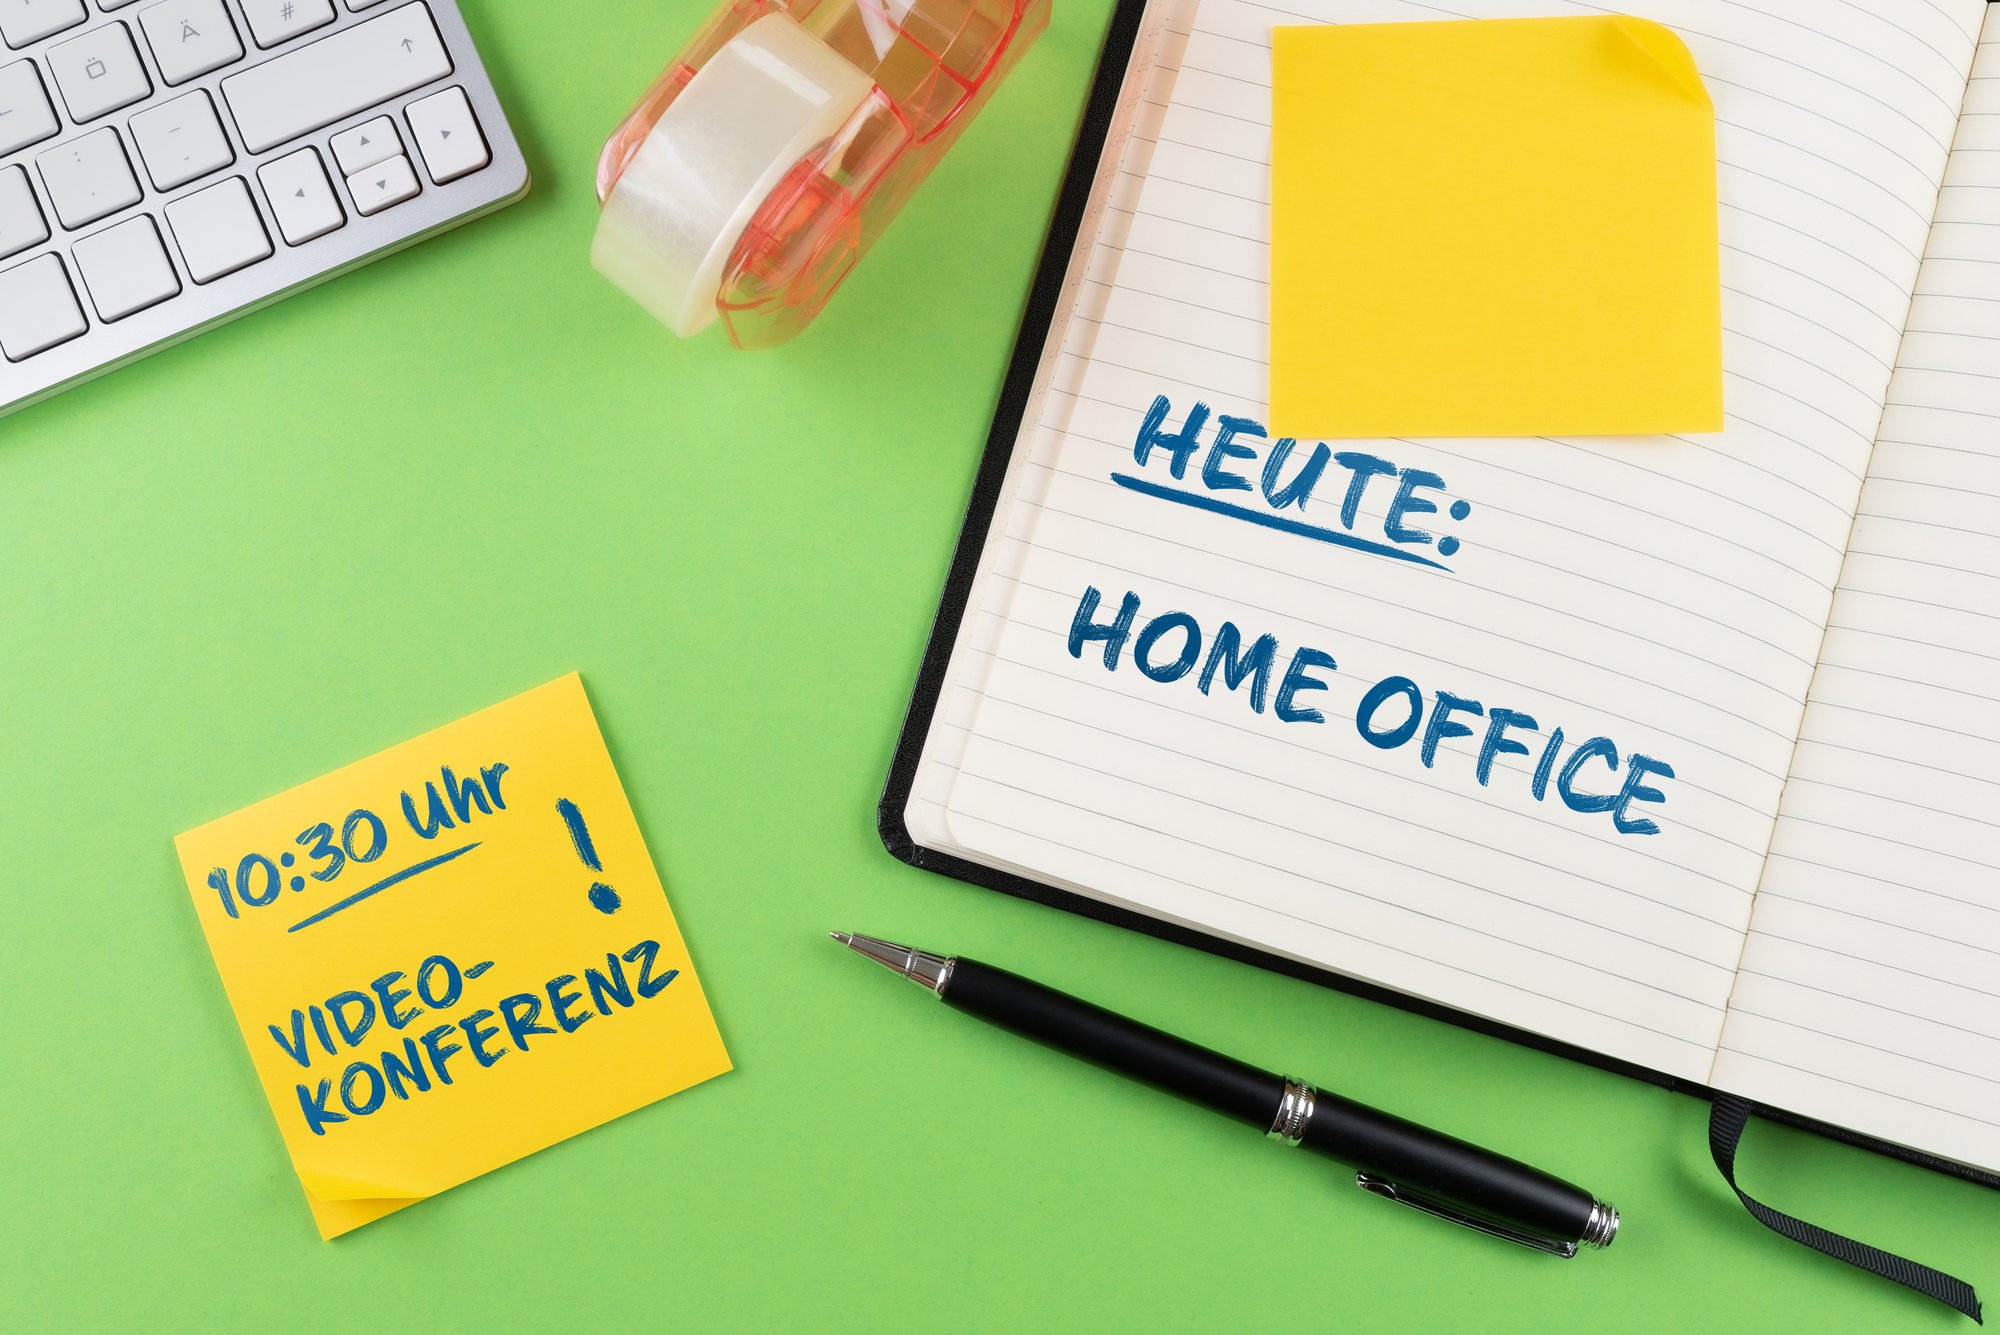 Potentieel voor thuiswerk sterk onderbenut in Duitsland